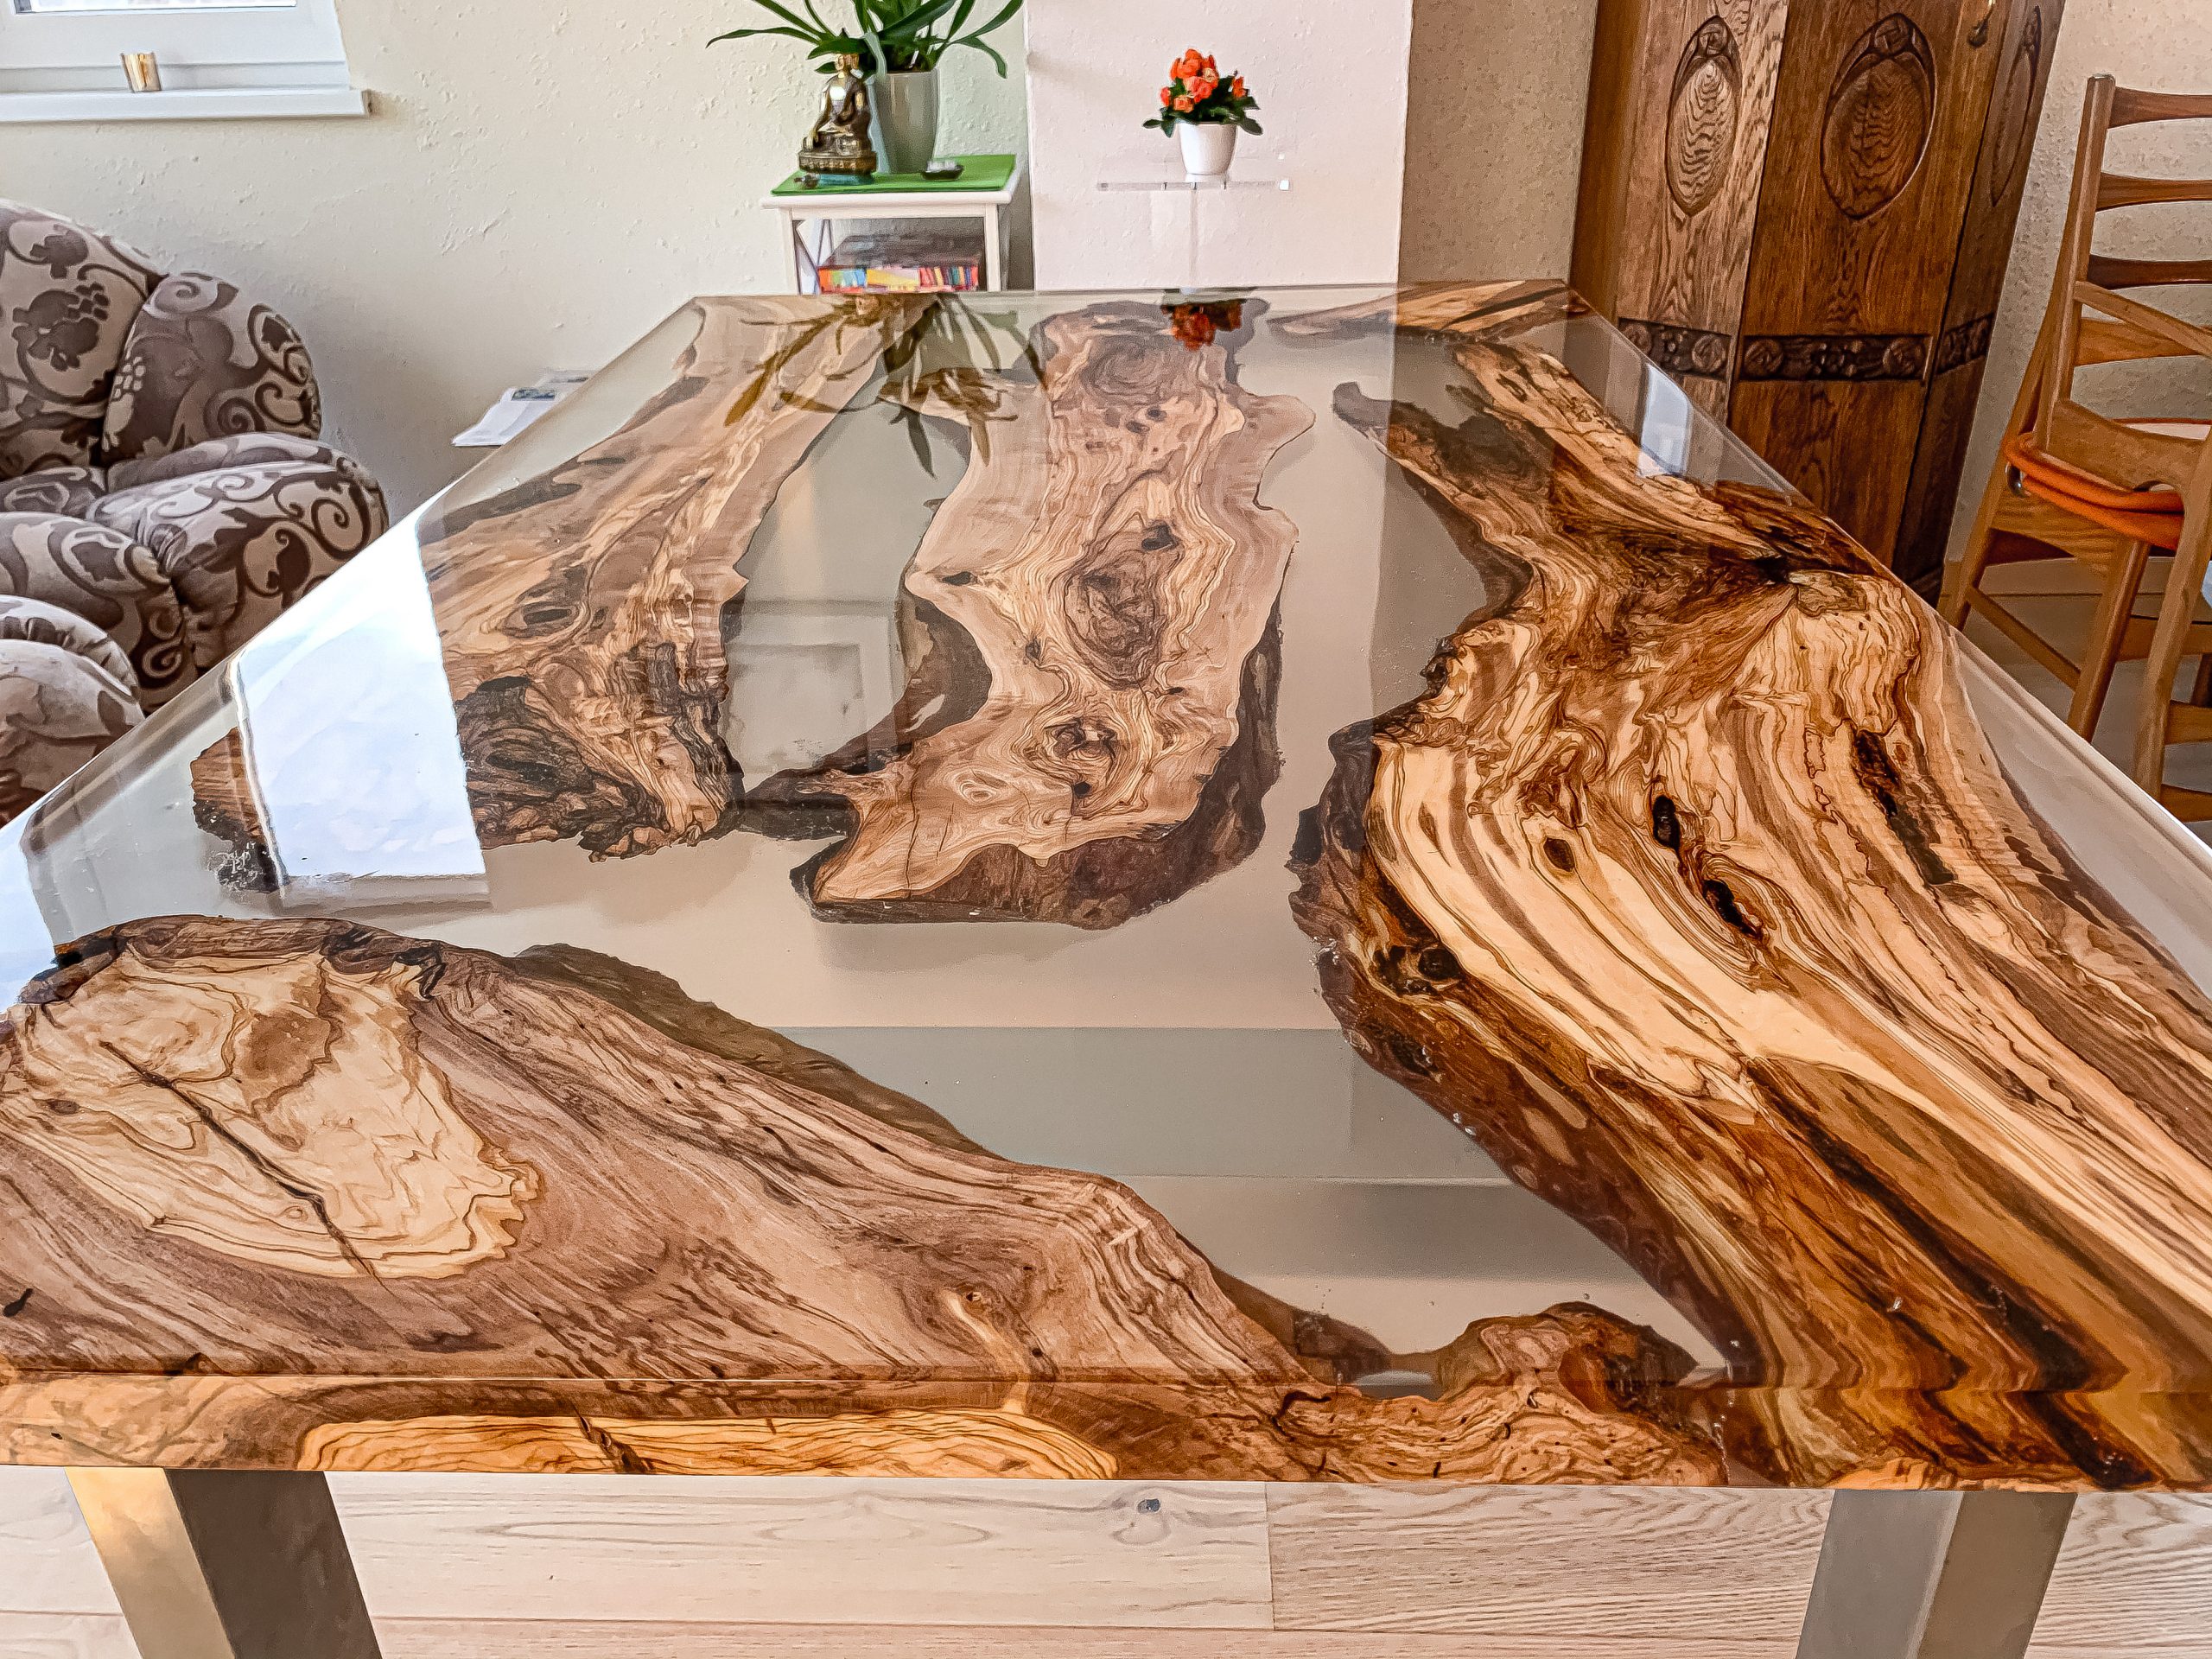 Table en bois d'olivier avec résine époxy - Meubles en résine